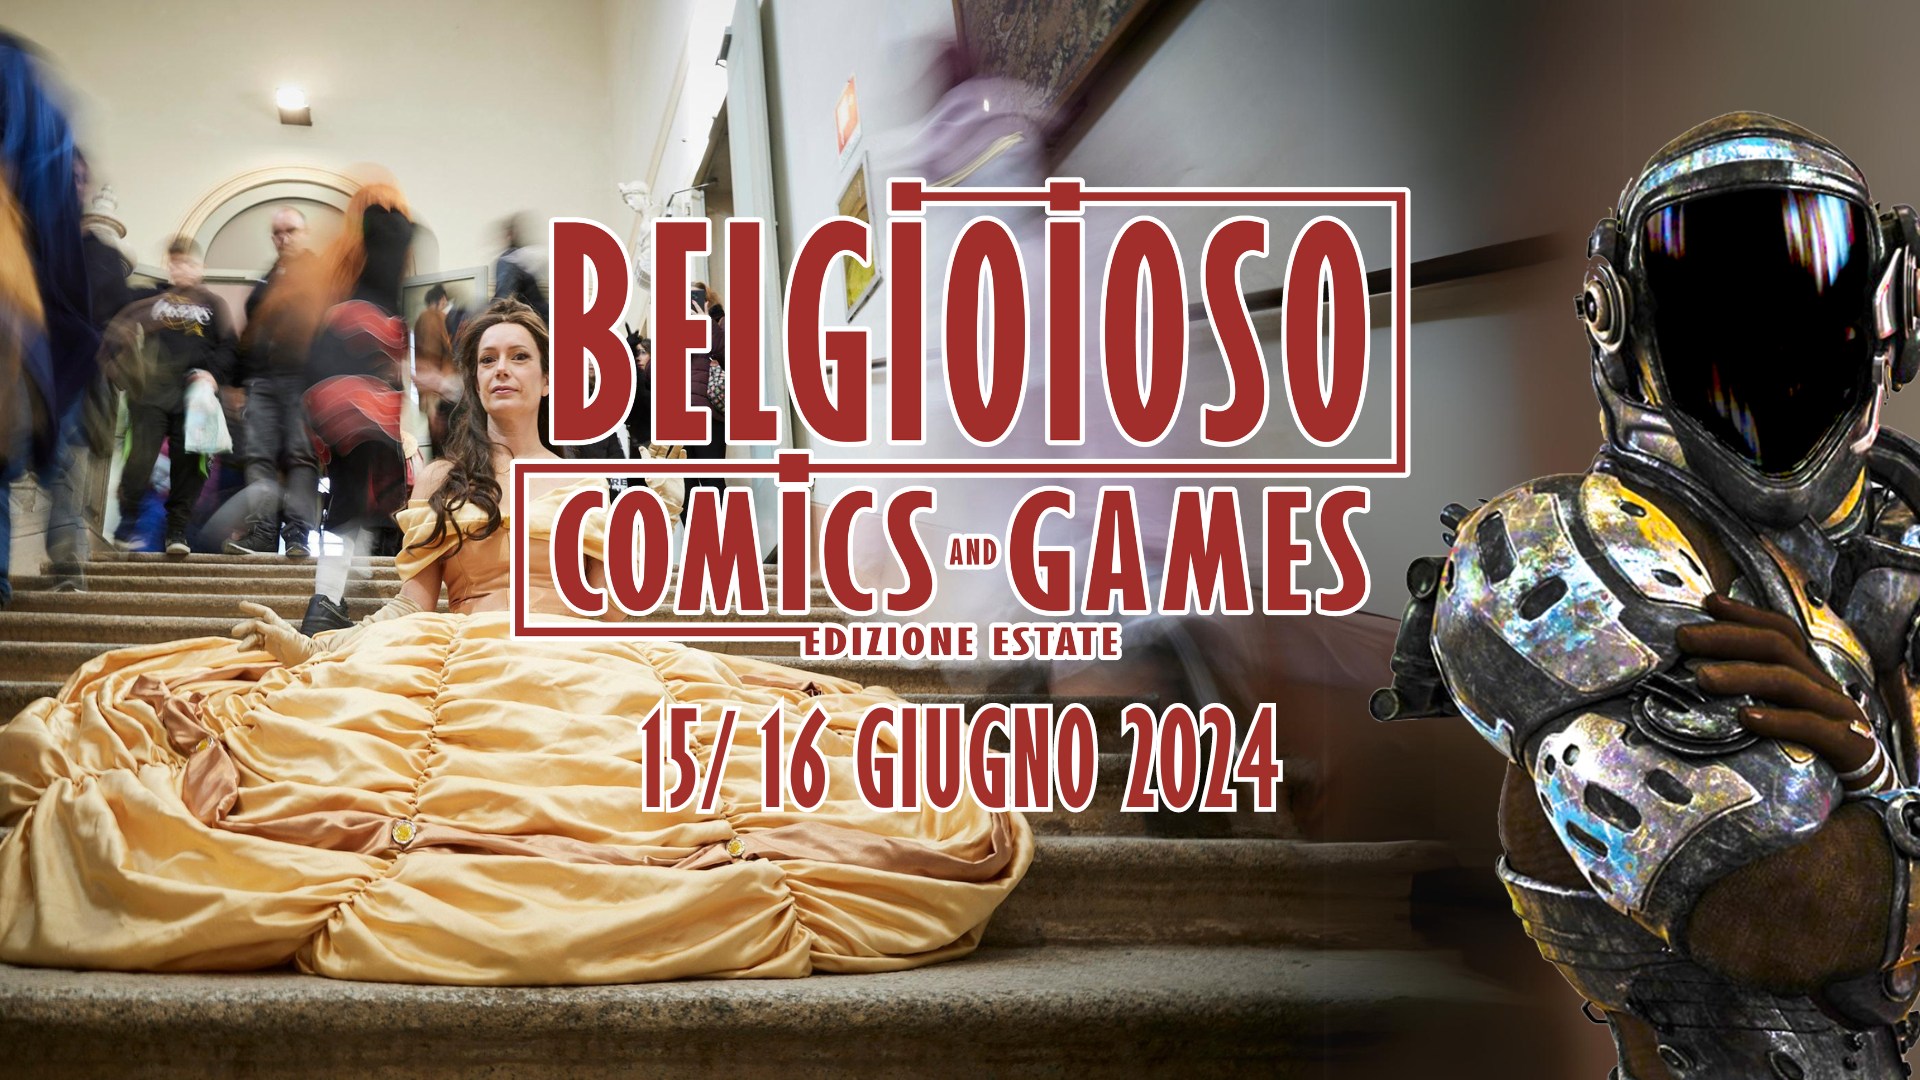 Belgioioso Comics and Games ritorna il 15 e 16 giugno 2024